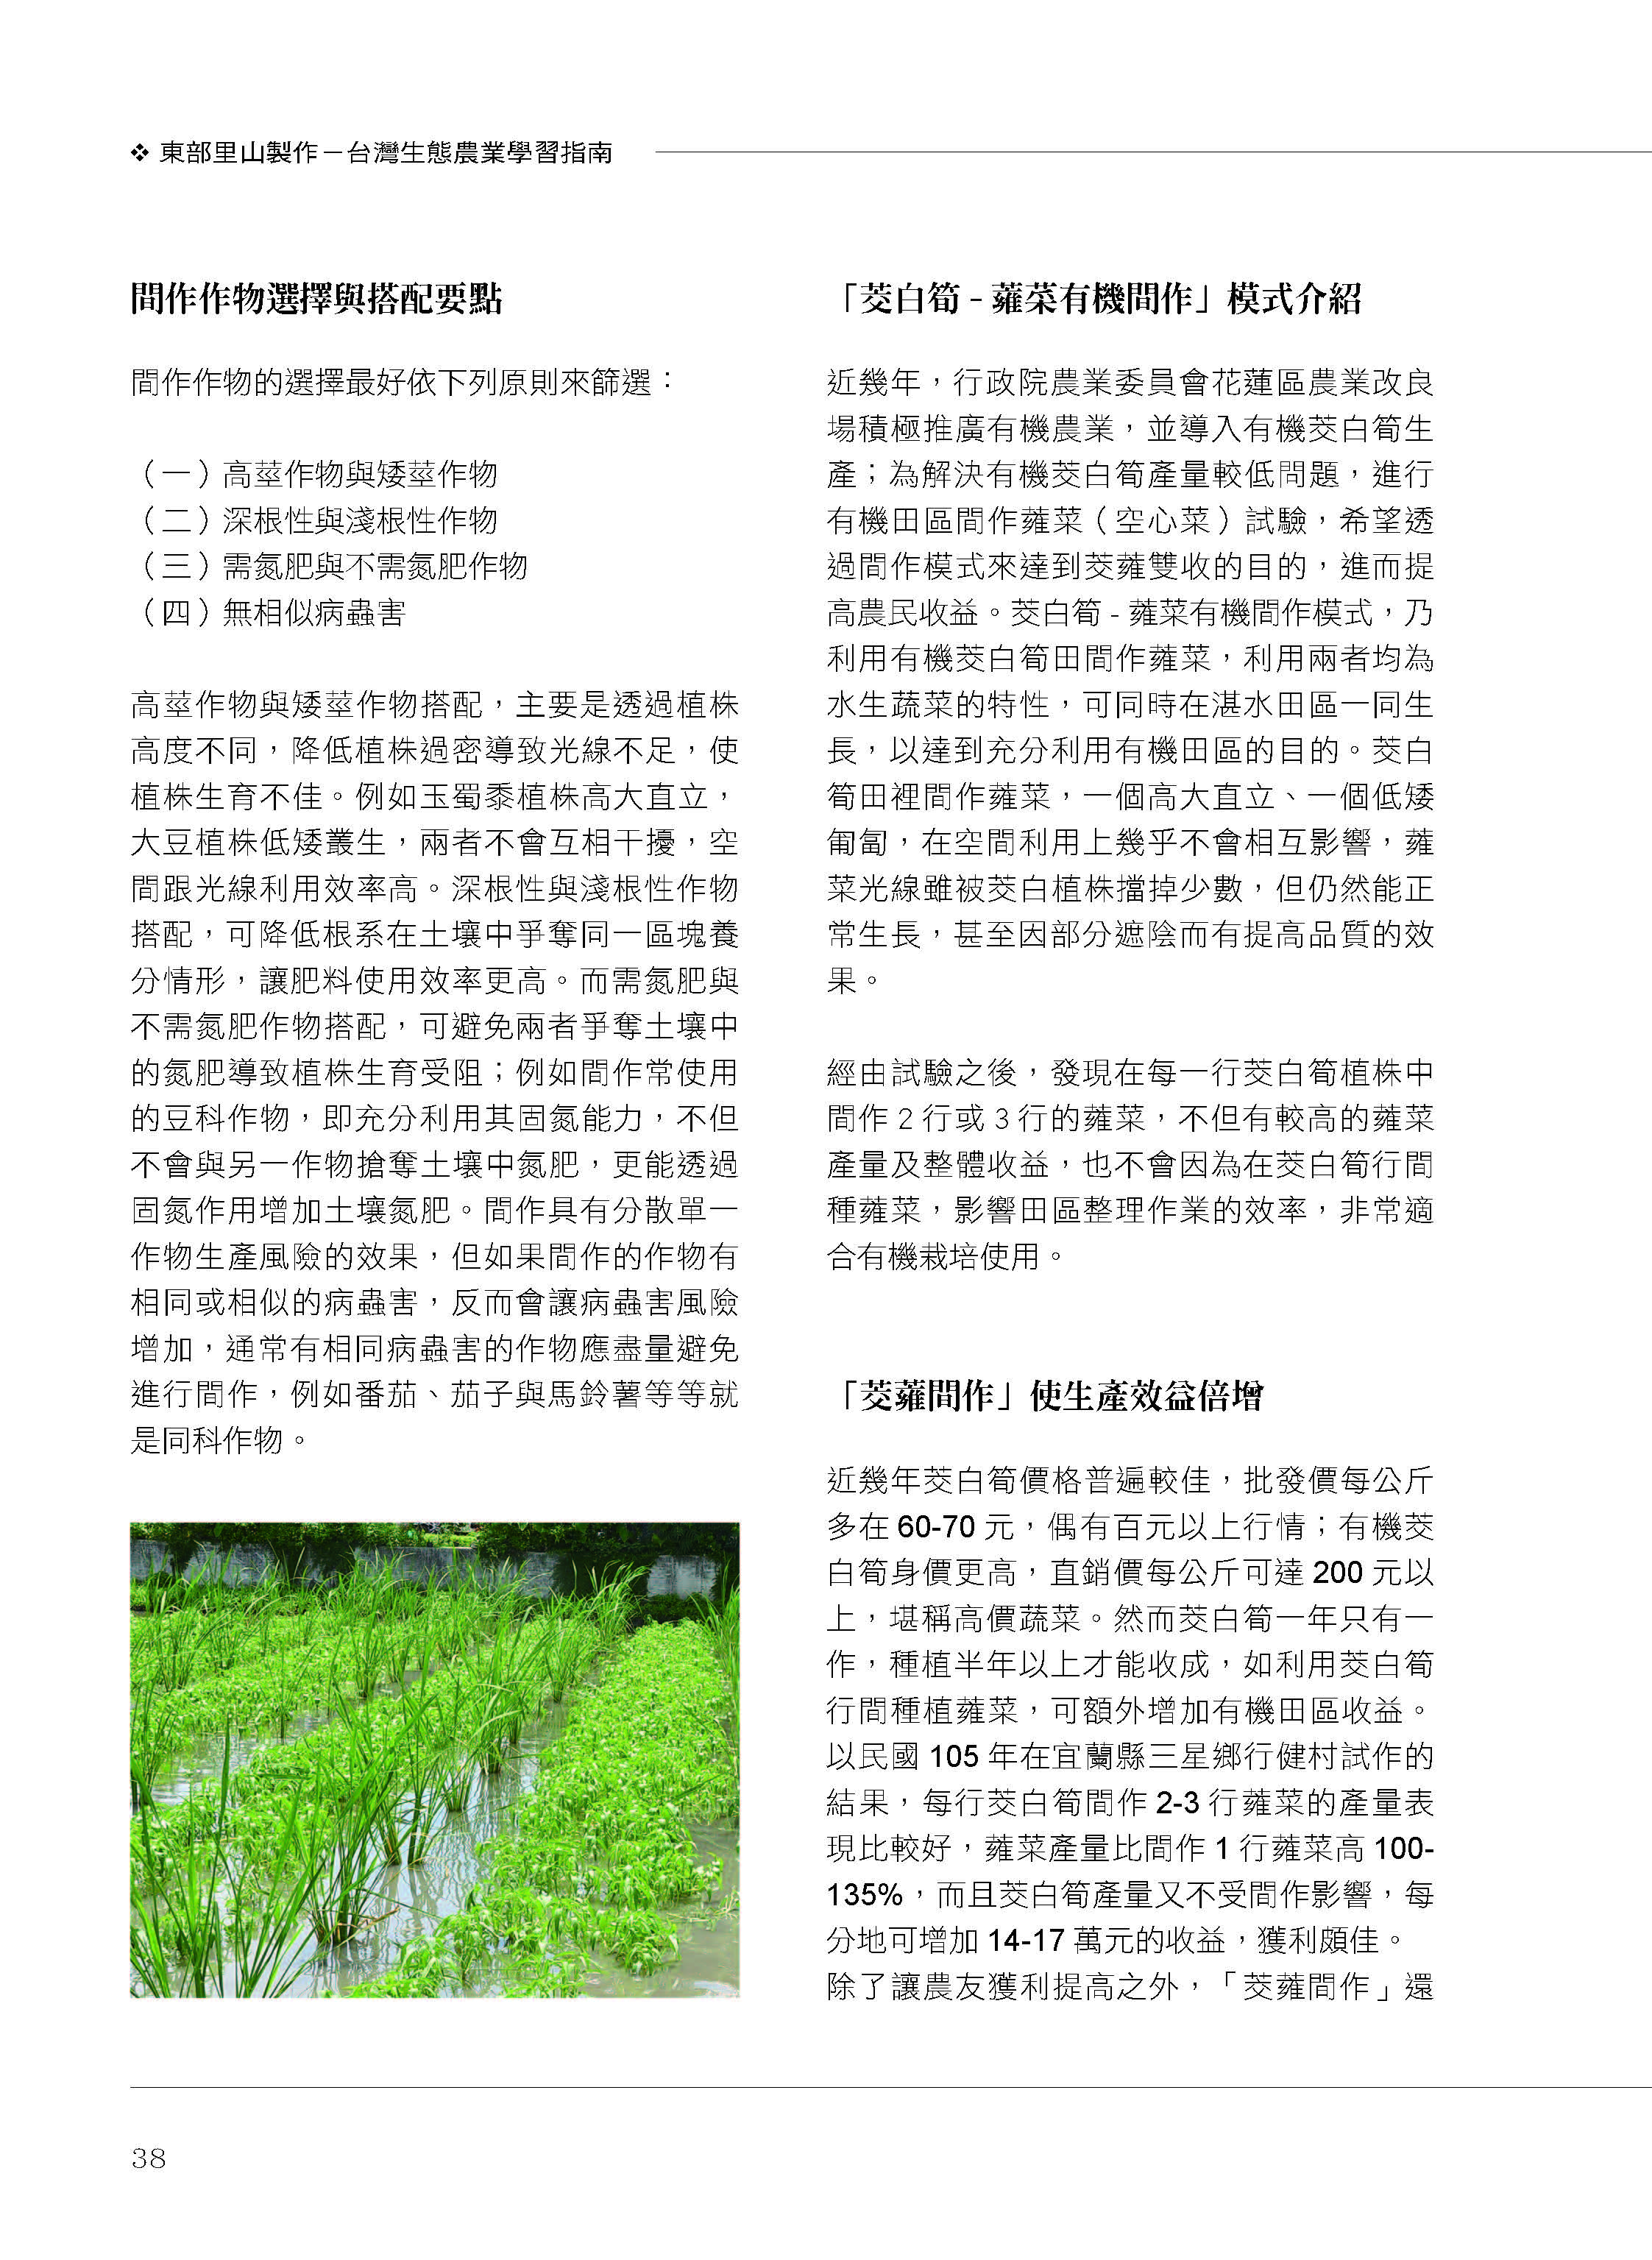 里山台灣－專欄3－研究與現場:多元收益與友善環境之間作生產模式-3